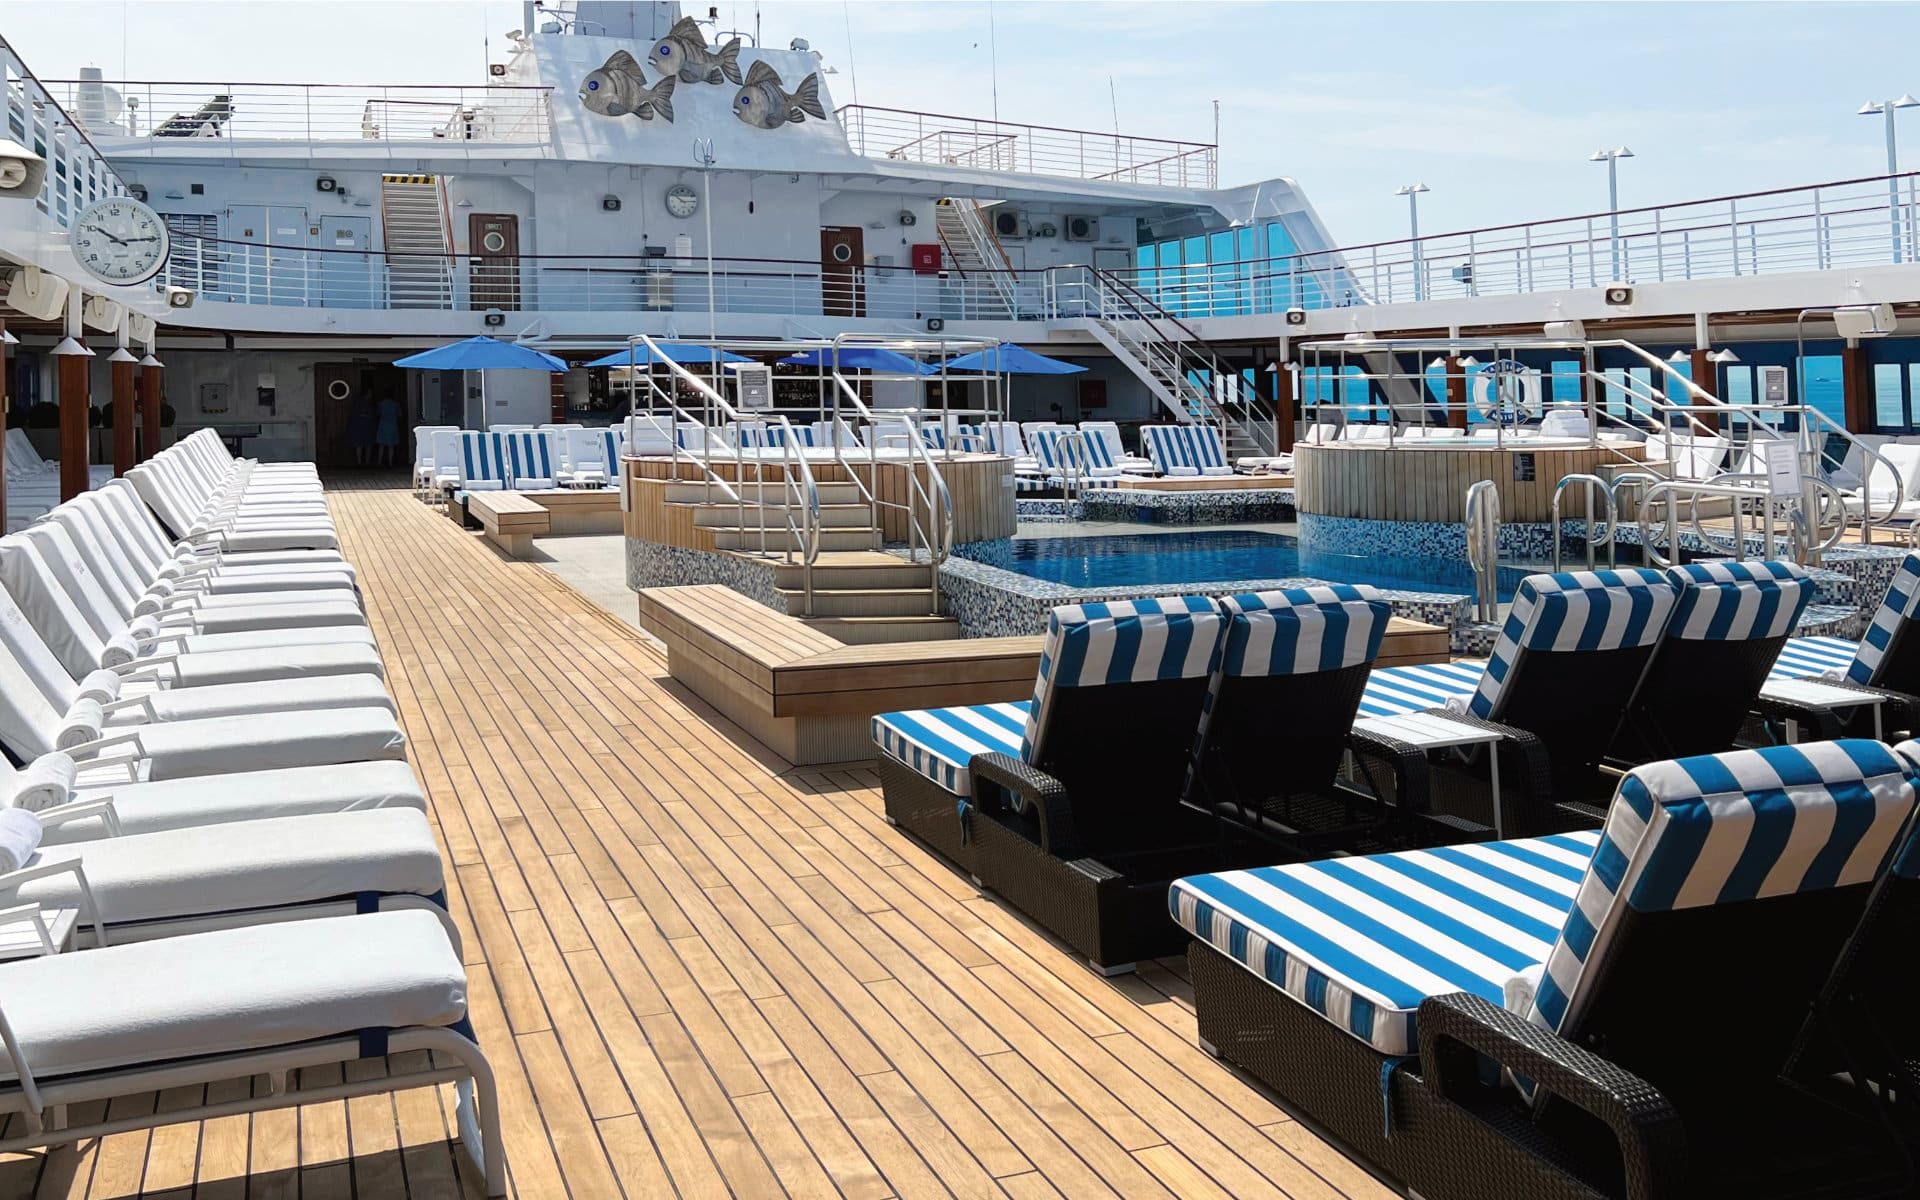 The Oceania Nautica pool deck.